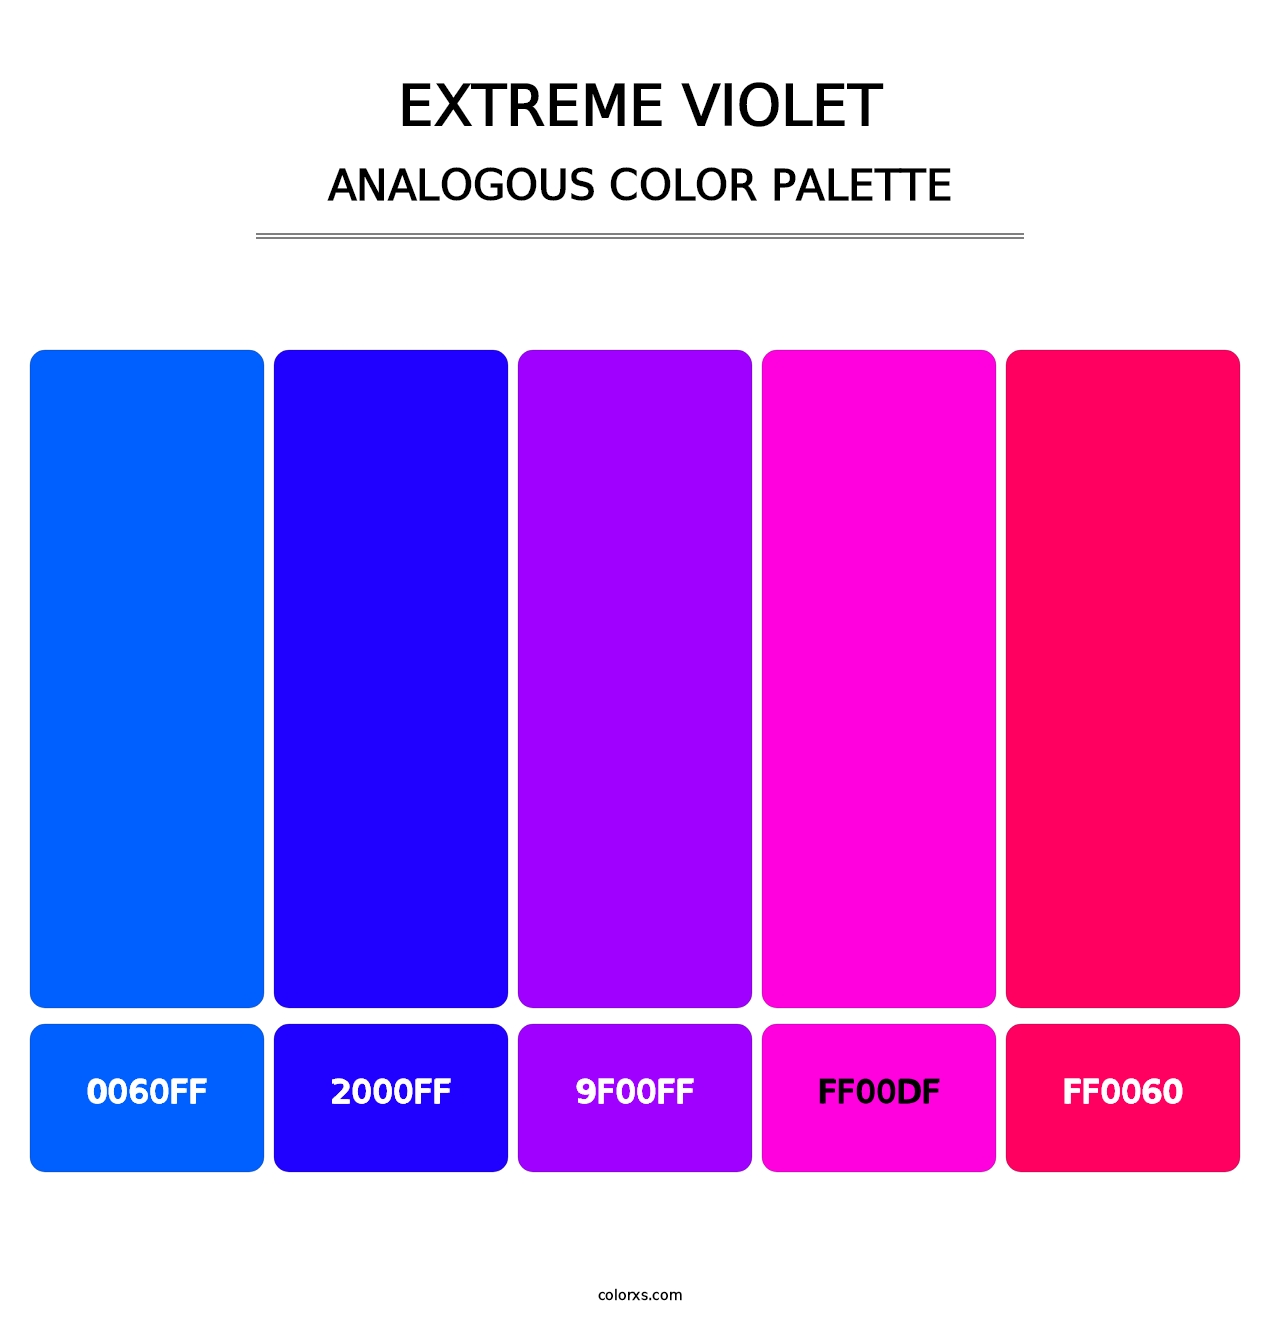 Extreme Violet - Analogous Color Palette